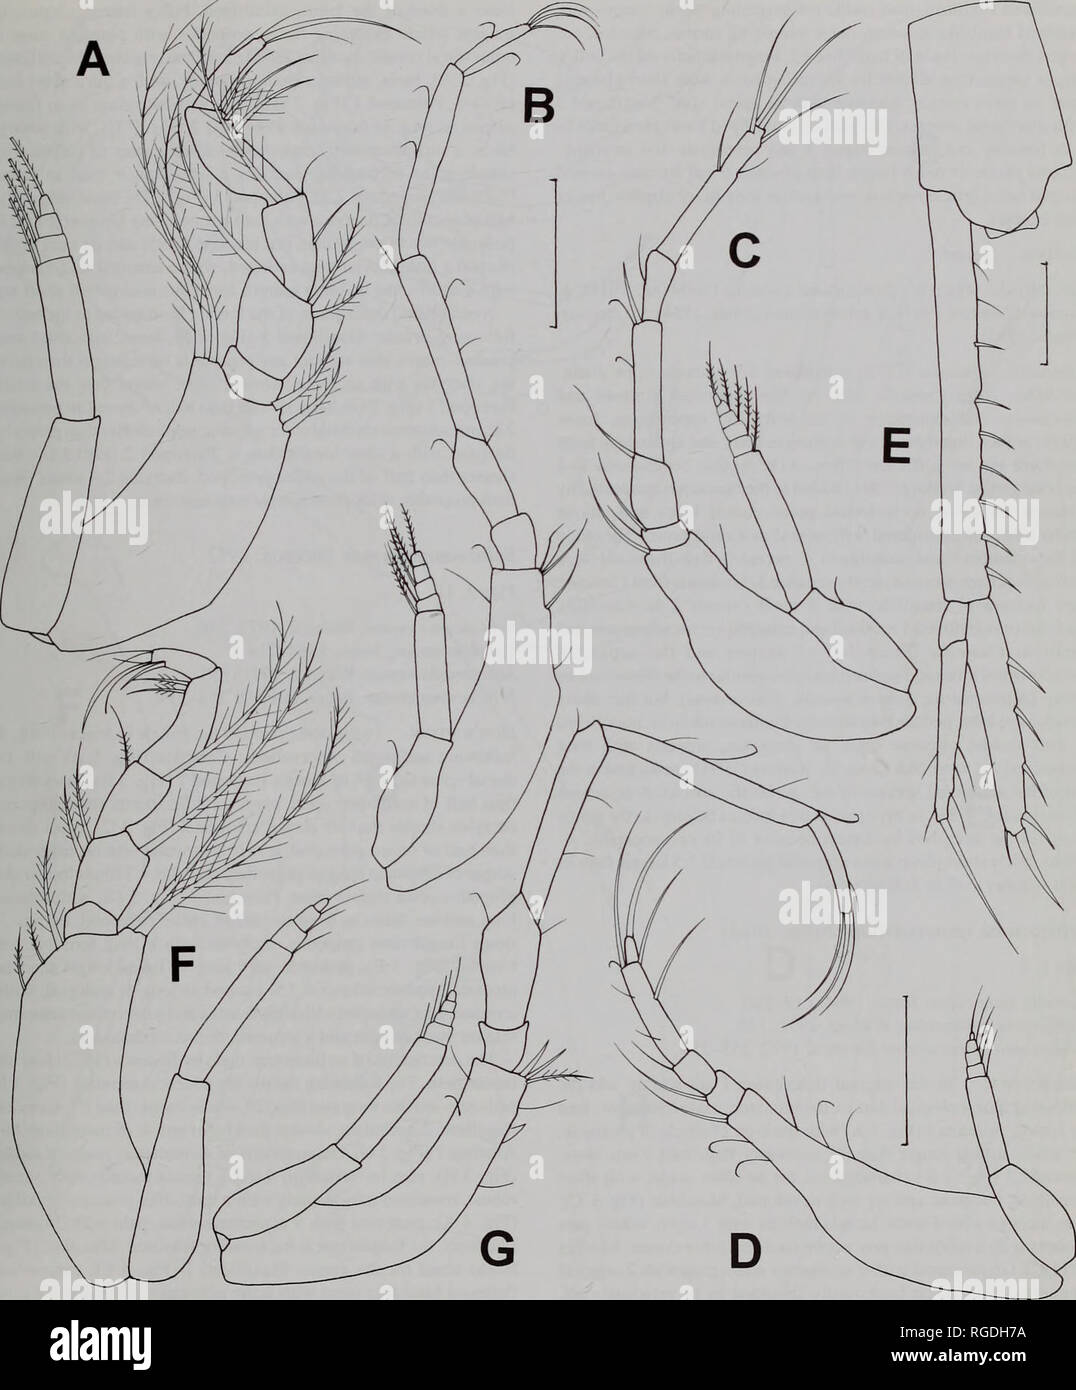 . Bulletin des Natural History Museum Zoologie. Und SCHIZOCUMA STYLOPTOCUMA 149. Abb. 2 Schizocuma spinoculatwn (Jones, 1984) A-E unreifen männlichen; F, G. weiblichen A. pereopod maxilliped 3; B 1; C 2; D. pereopod pereopod 3; E. uropod; F. G. pereopod maxilliped 3; 1. Maßstabsbalken (in mm): A, E 0,1; B, C, F, G 0.2; D 0.2.. Bitte beachten Sie, dass diese Bilder sind von der gescannten Seite Bilder, die digital für die Lesbarkeit verbessert haben mögen - Färbung und Aussehen dieser Abbildungen können nicht perfekt dem Original ähneln. extrahiert. Natural History Museum (London). Andover: Abfangen Stockfoto